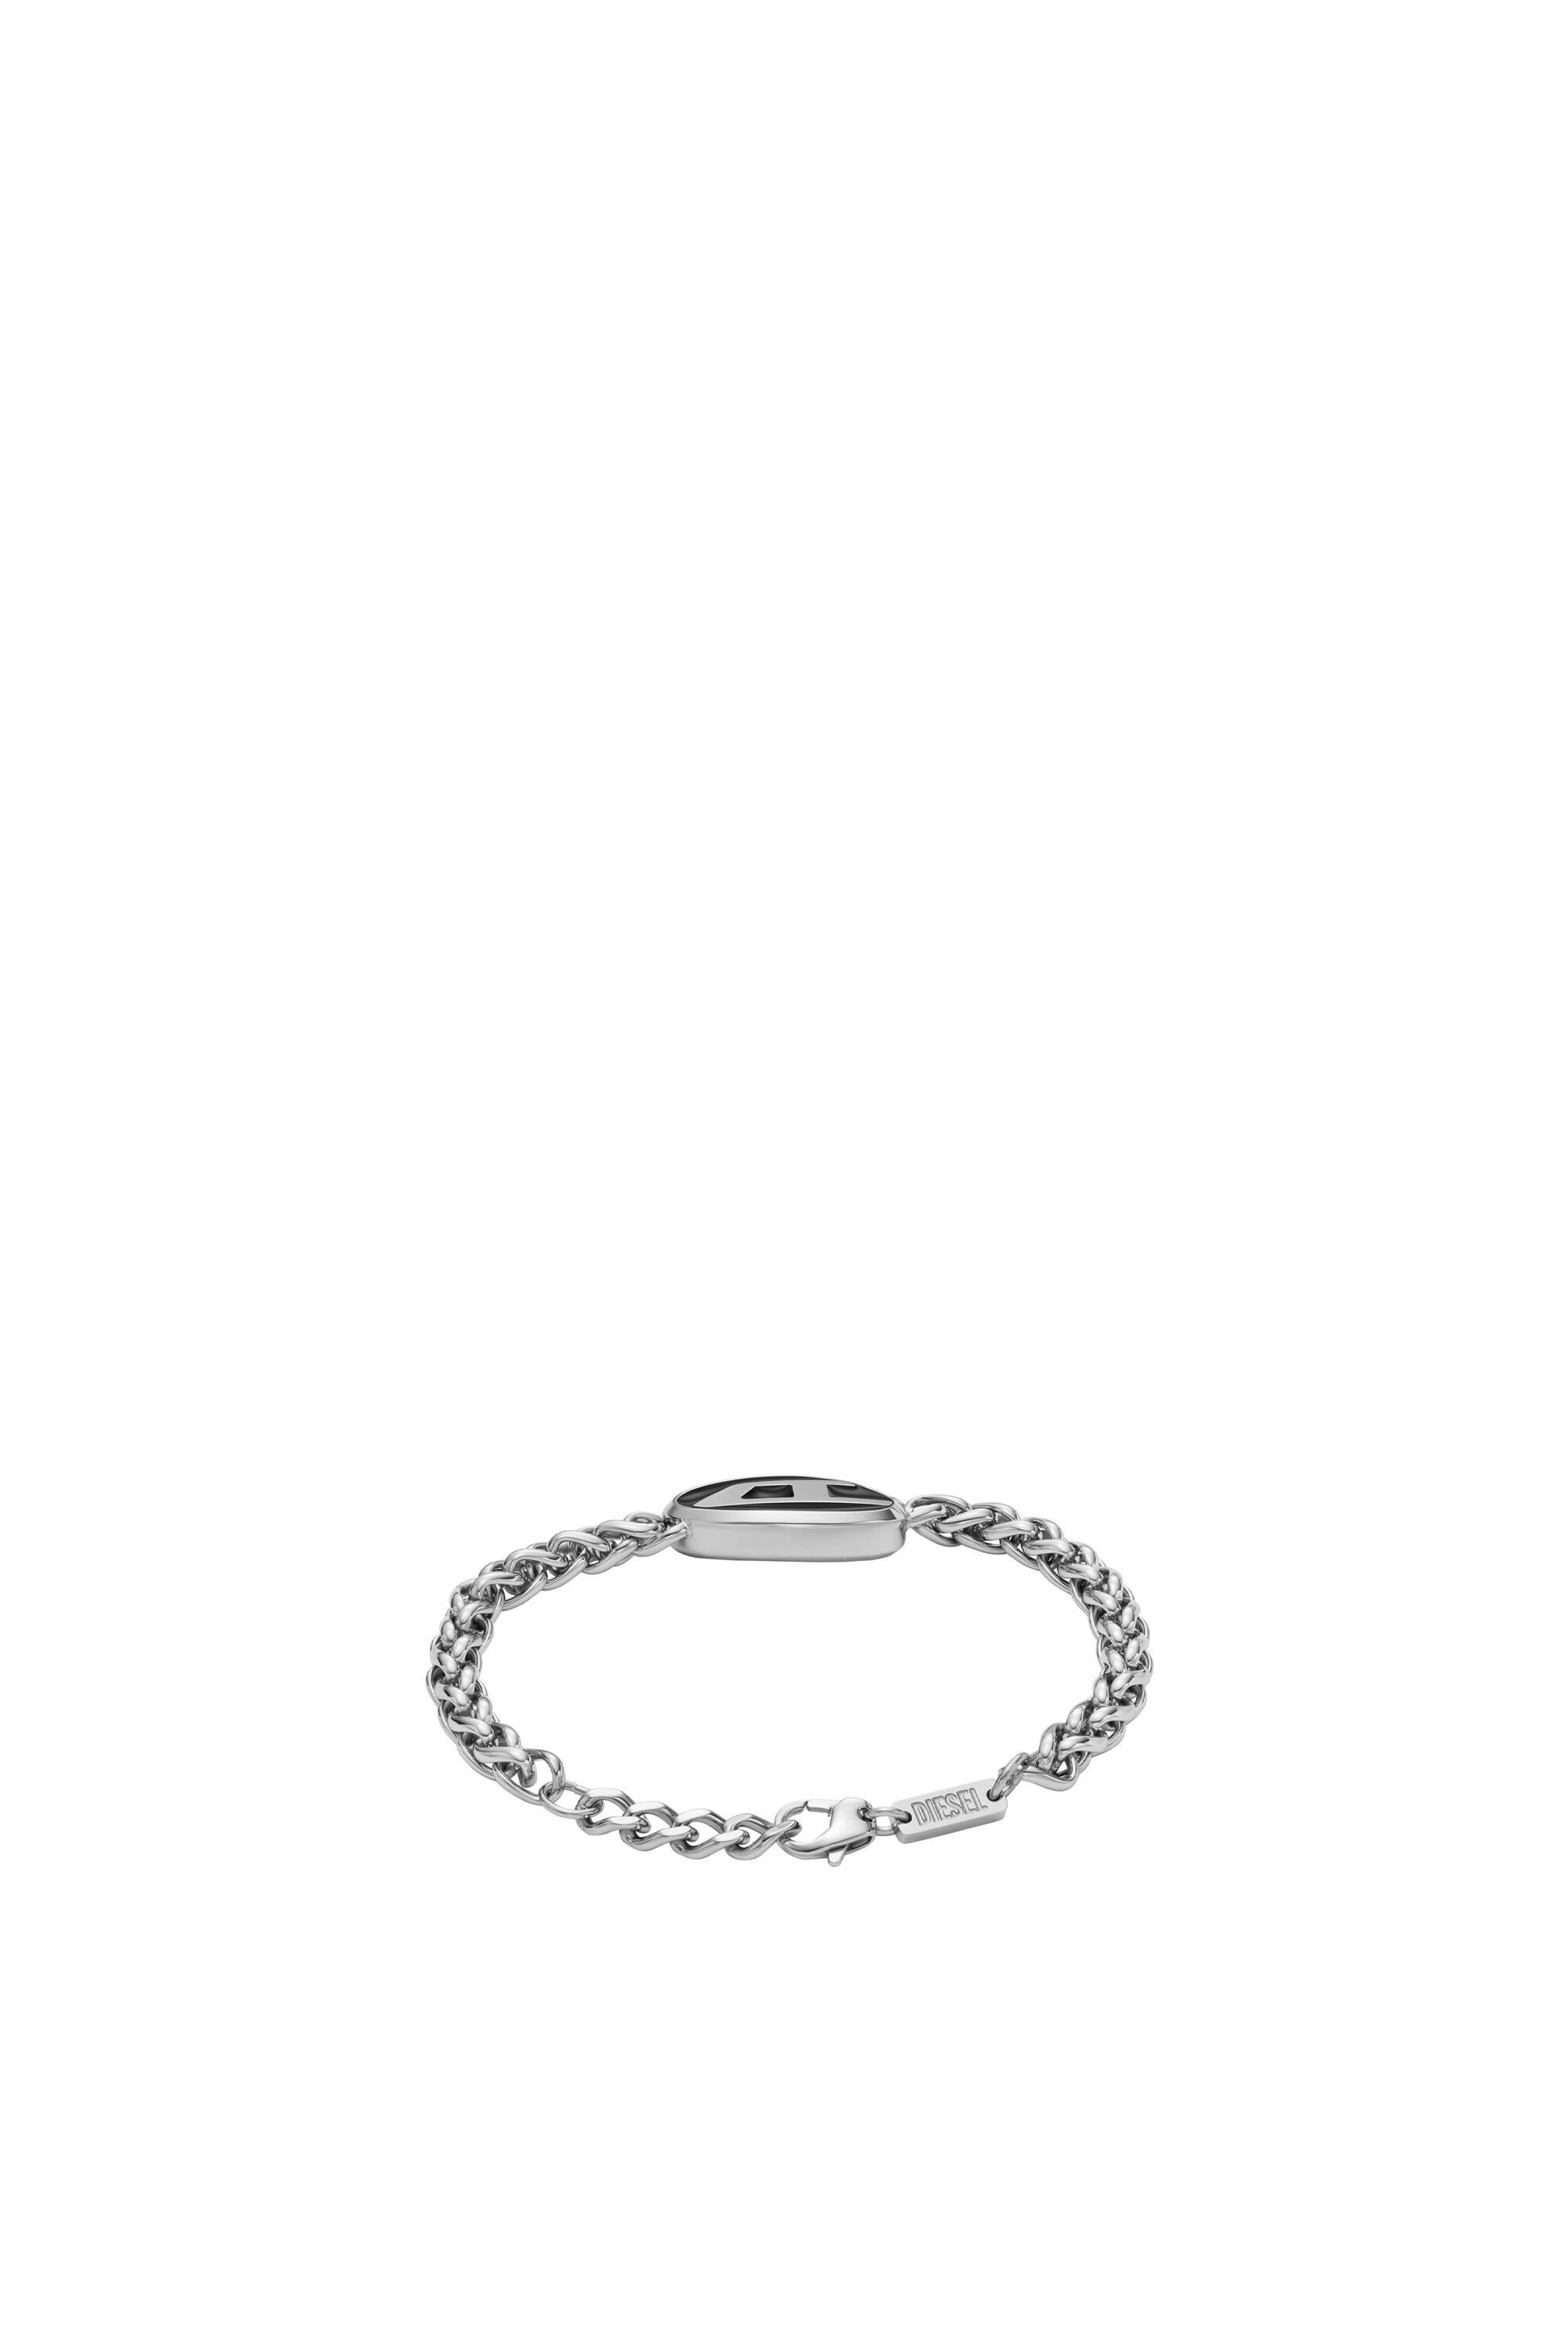 Diesel - DX1469, Mixte Bracelet chaîne en acier inoxydable in Gris argenté - Image 2